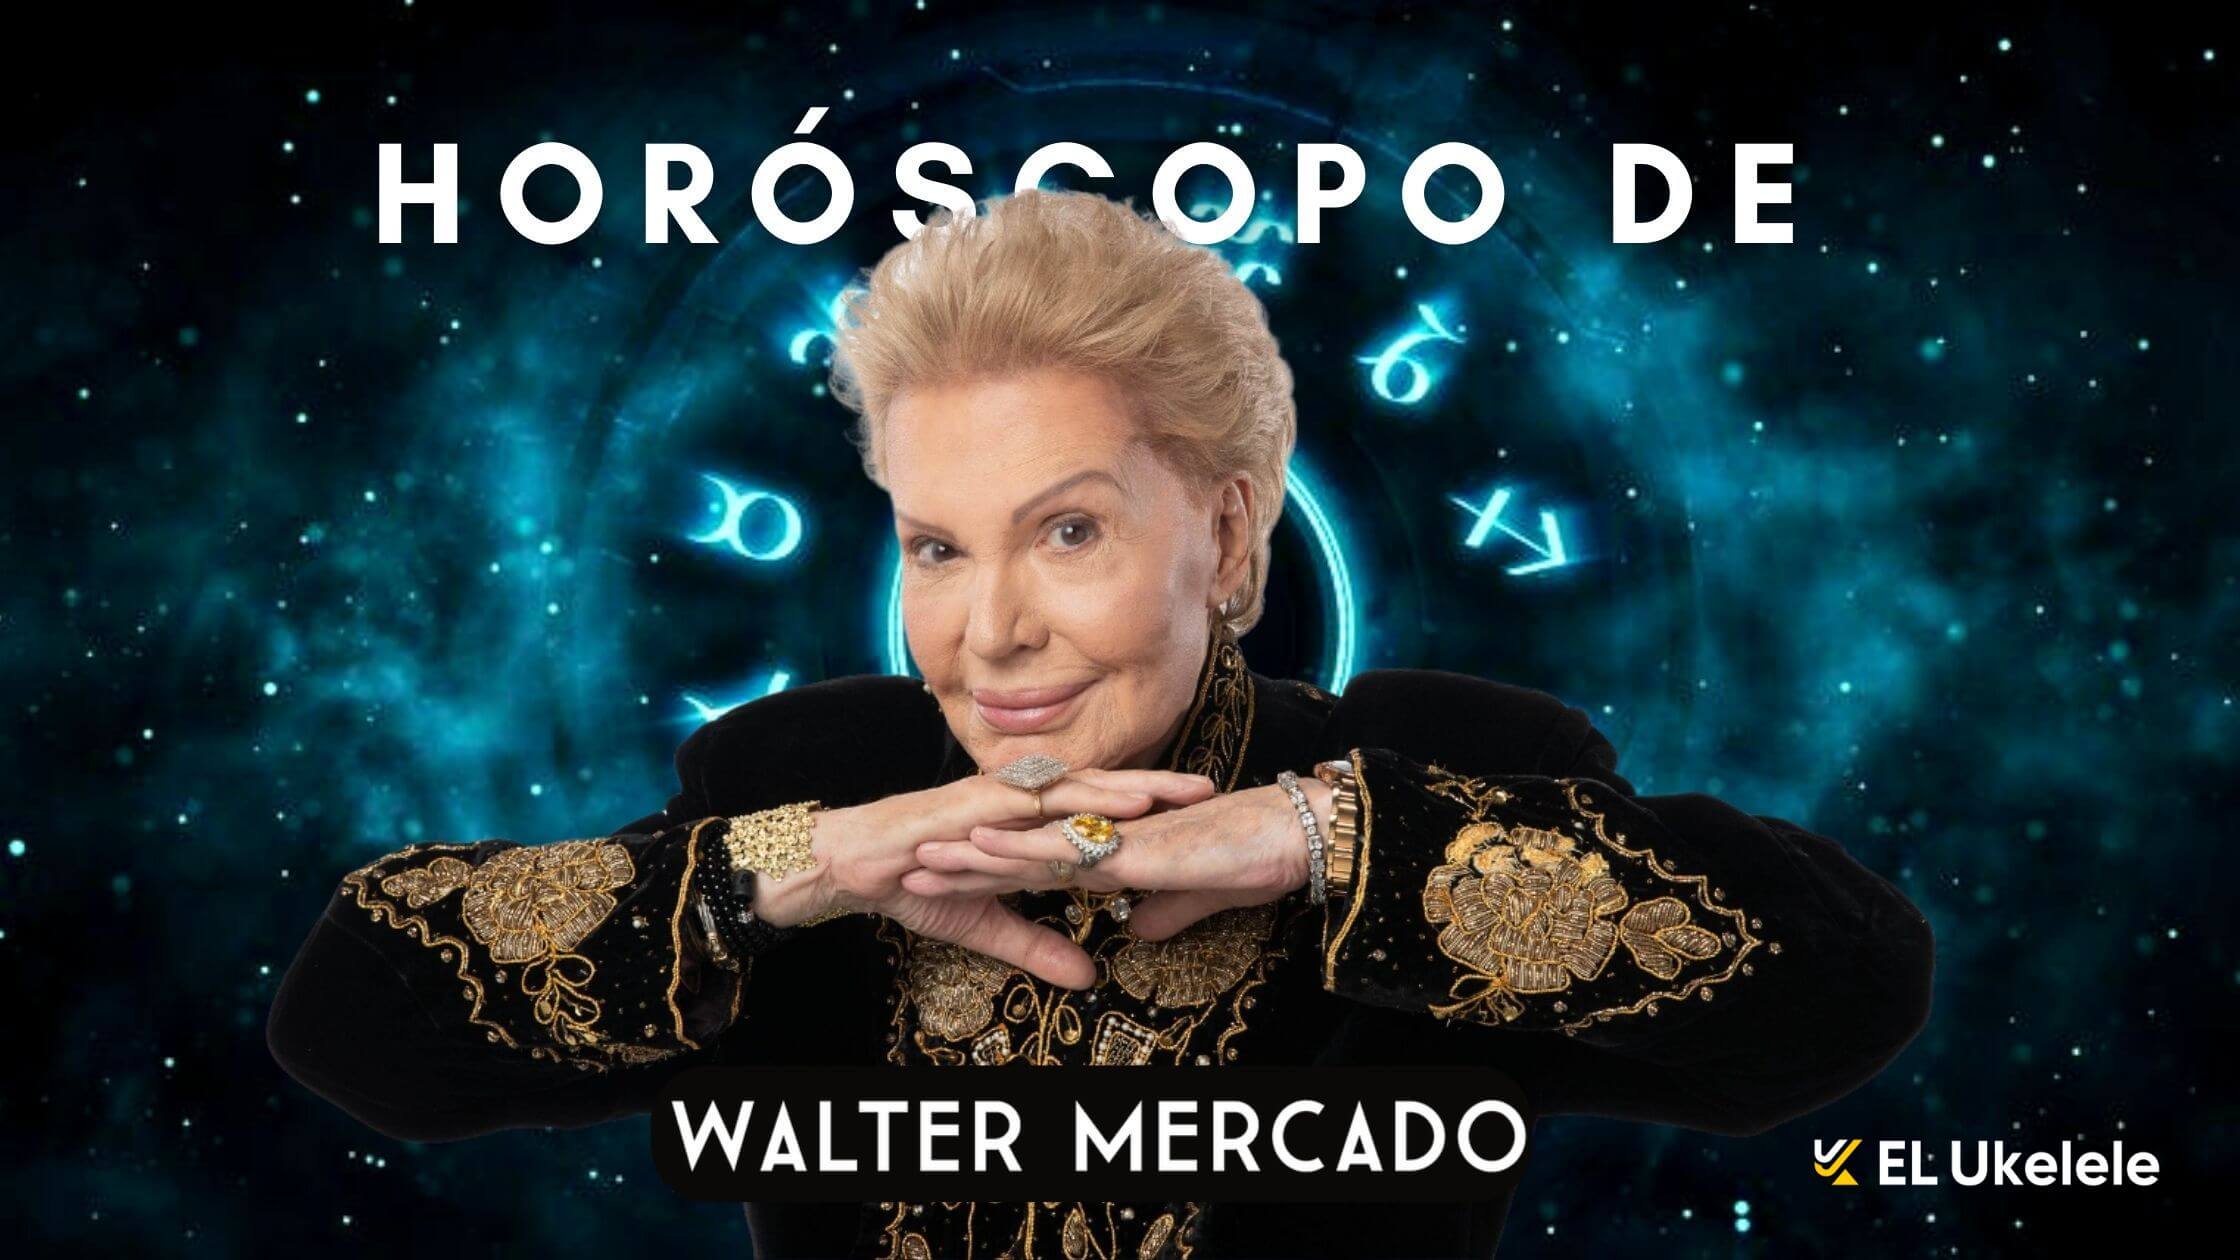 Horoscopo de Walter Mercado para la semana del 21 de septiembre de 2022 2 1